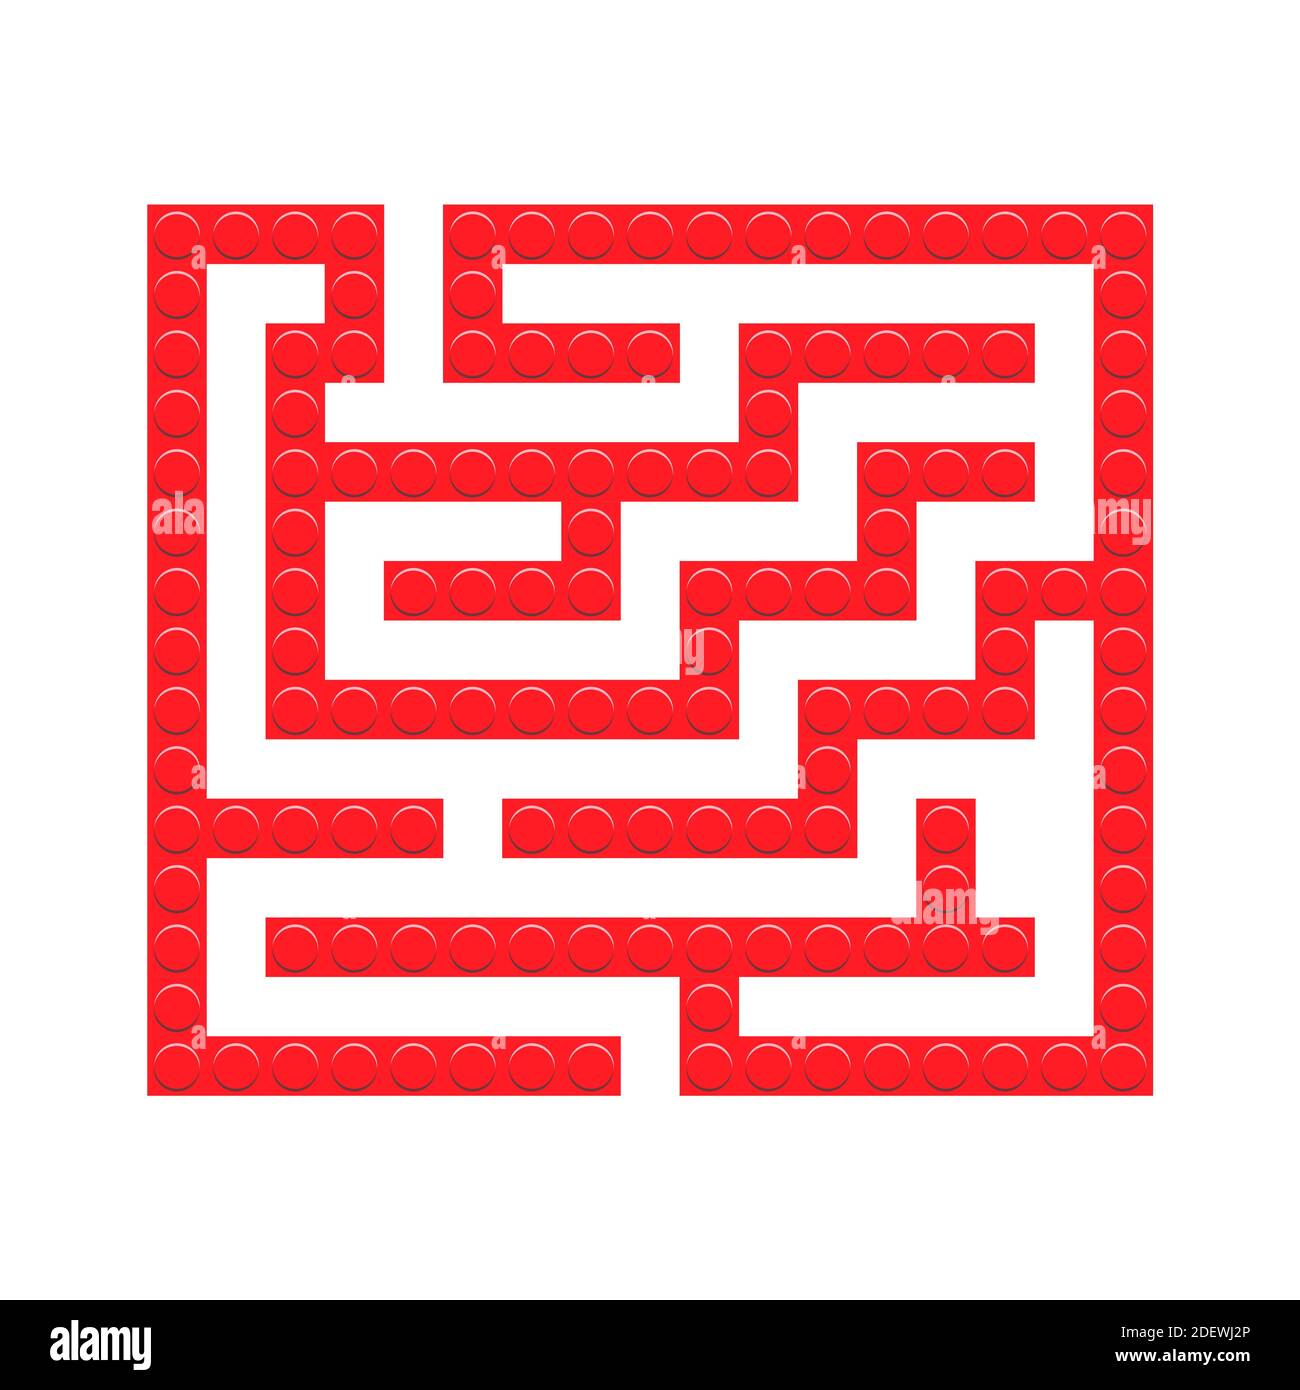 Labirinto quadrato rosso mattoni gioco labirinto giocattolo per bambini. Logica labirintica. Un ingresso e un modo giusto per andare. Immagine vettoriale piatta luminosa Illustrazione Vettoriale